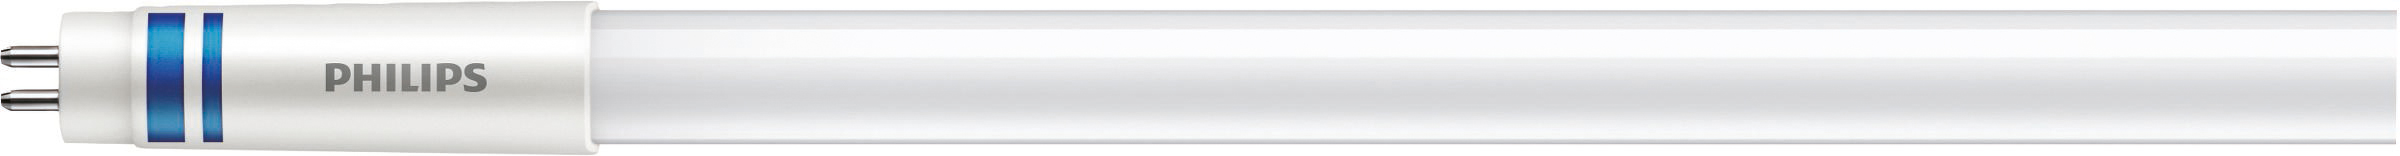 Philips Lighting LED-Tube T5 f. EVG G5, 865, 1449mm MAS LEDtube#41909400 günstig online kaufen